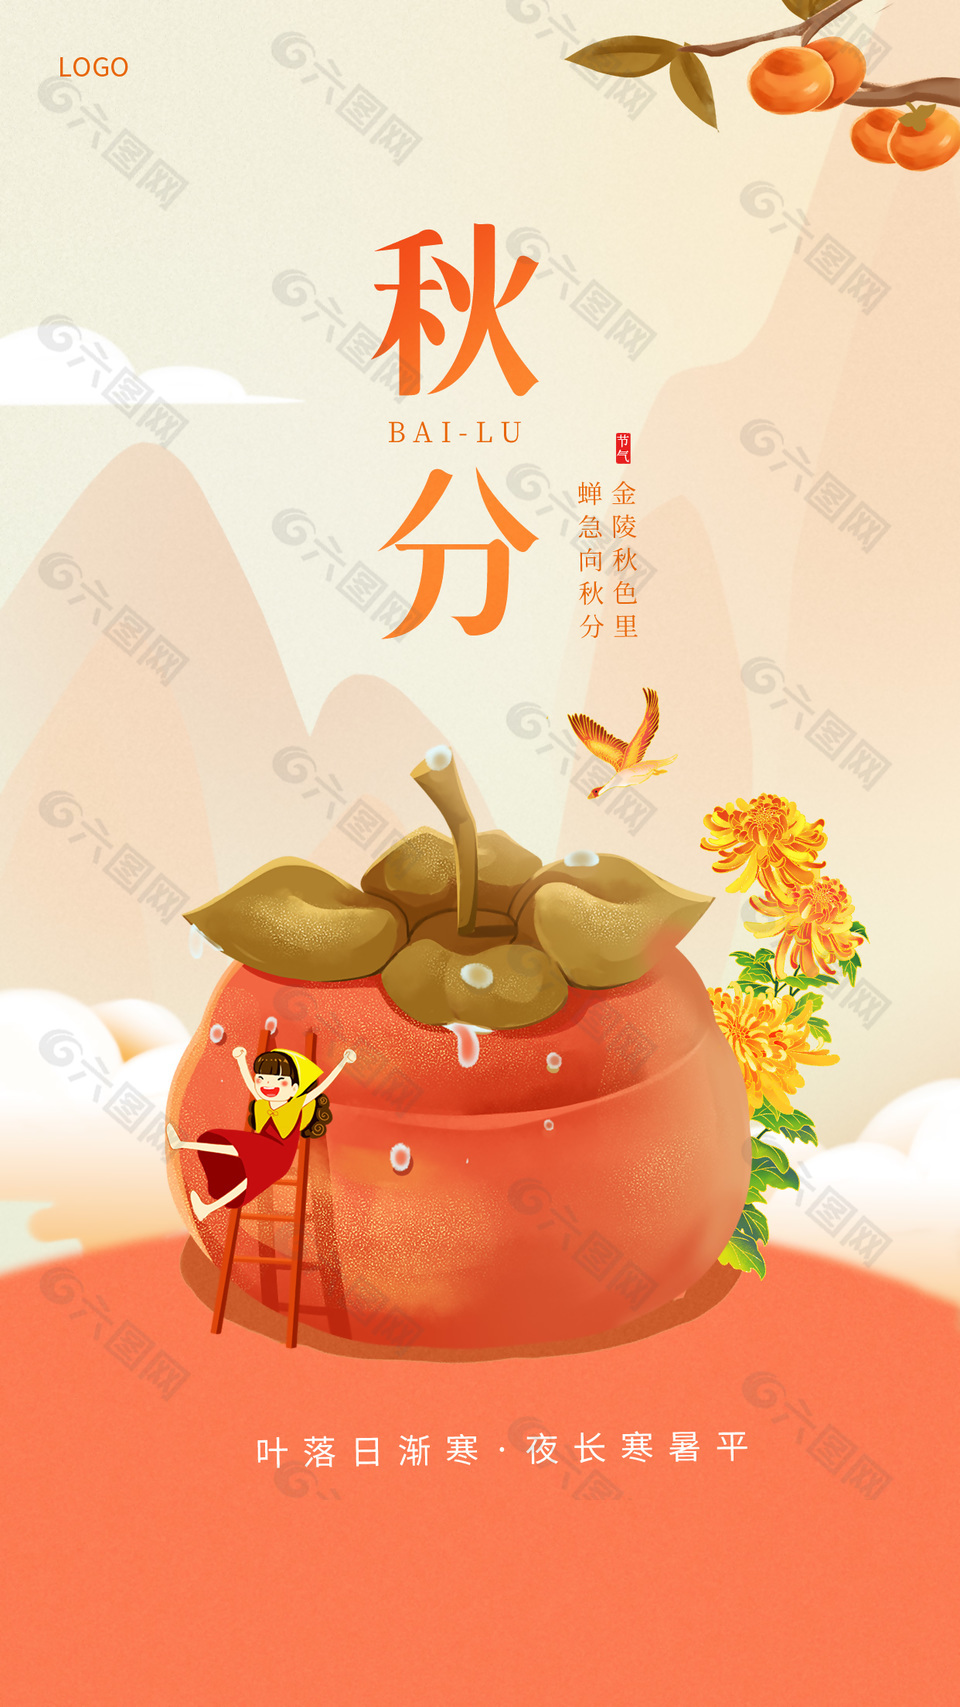 简约人物柿子插画背景秋分节气节日海报